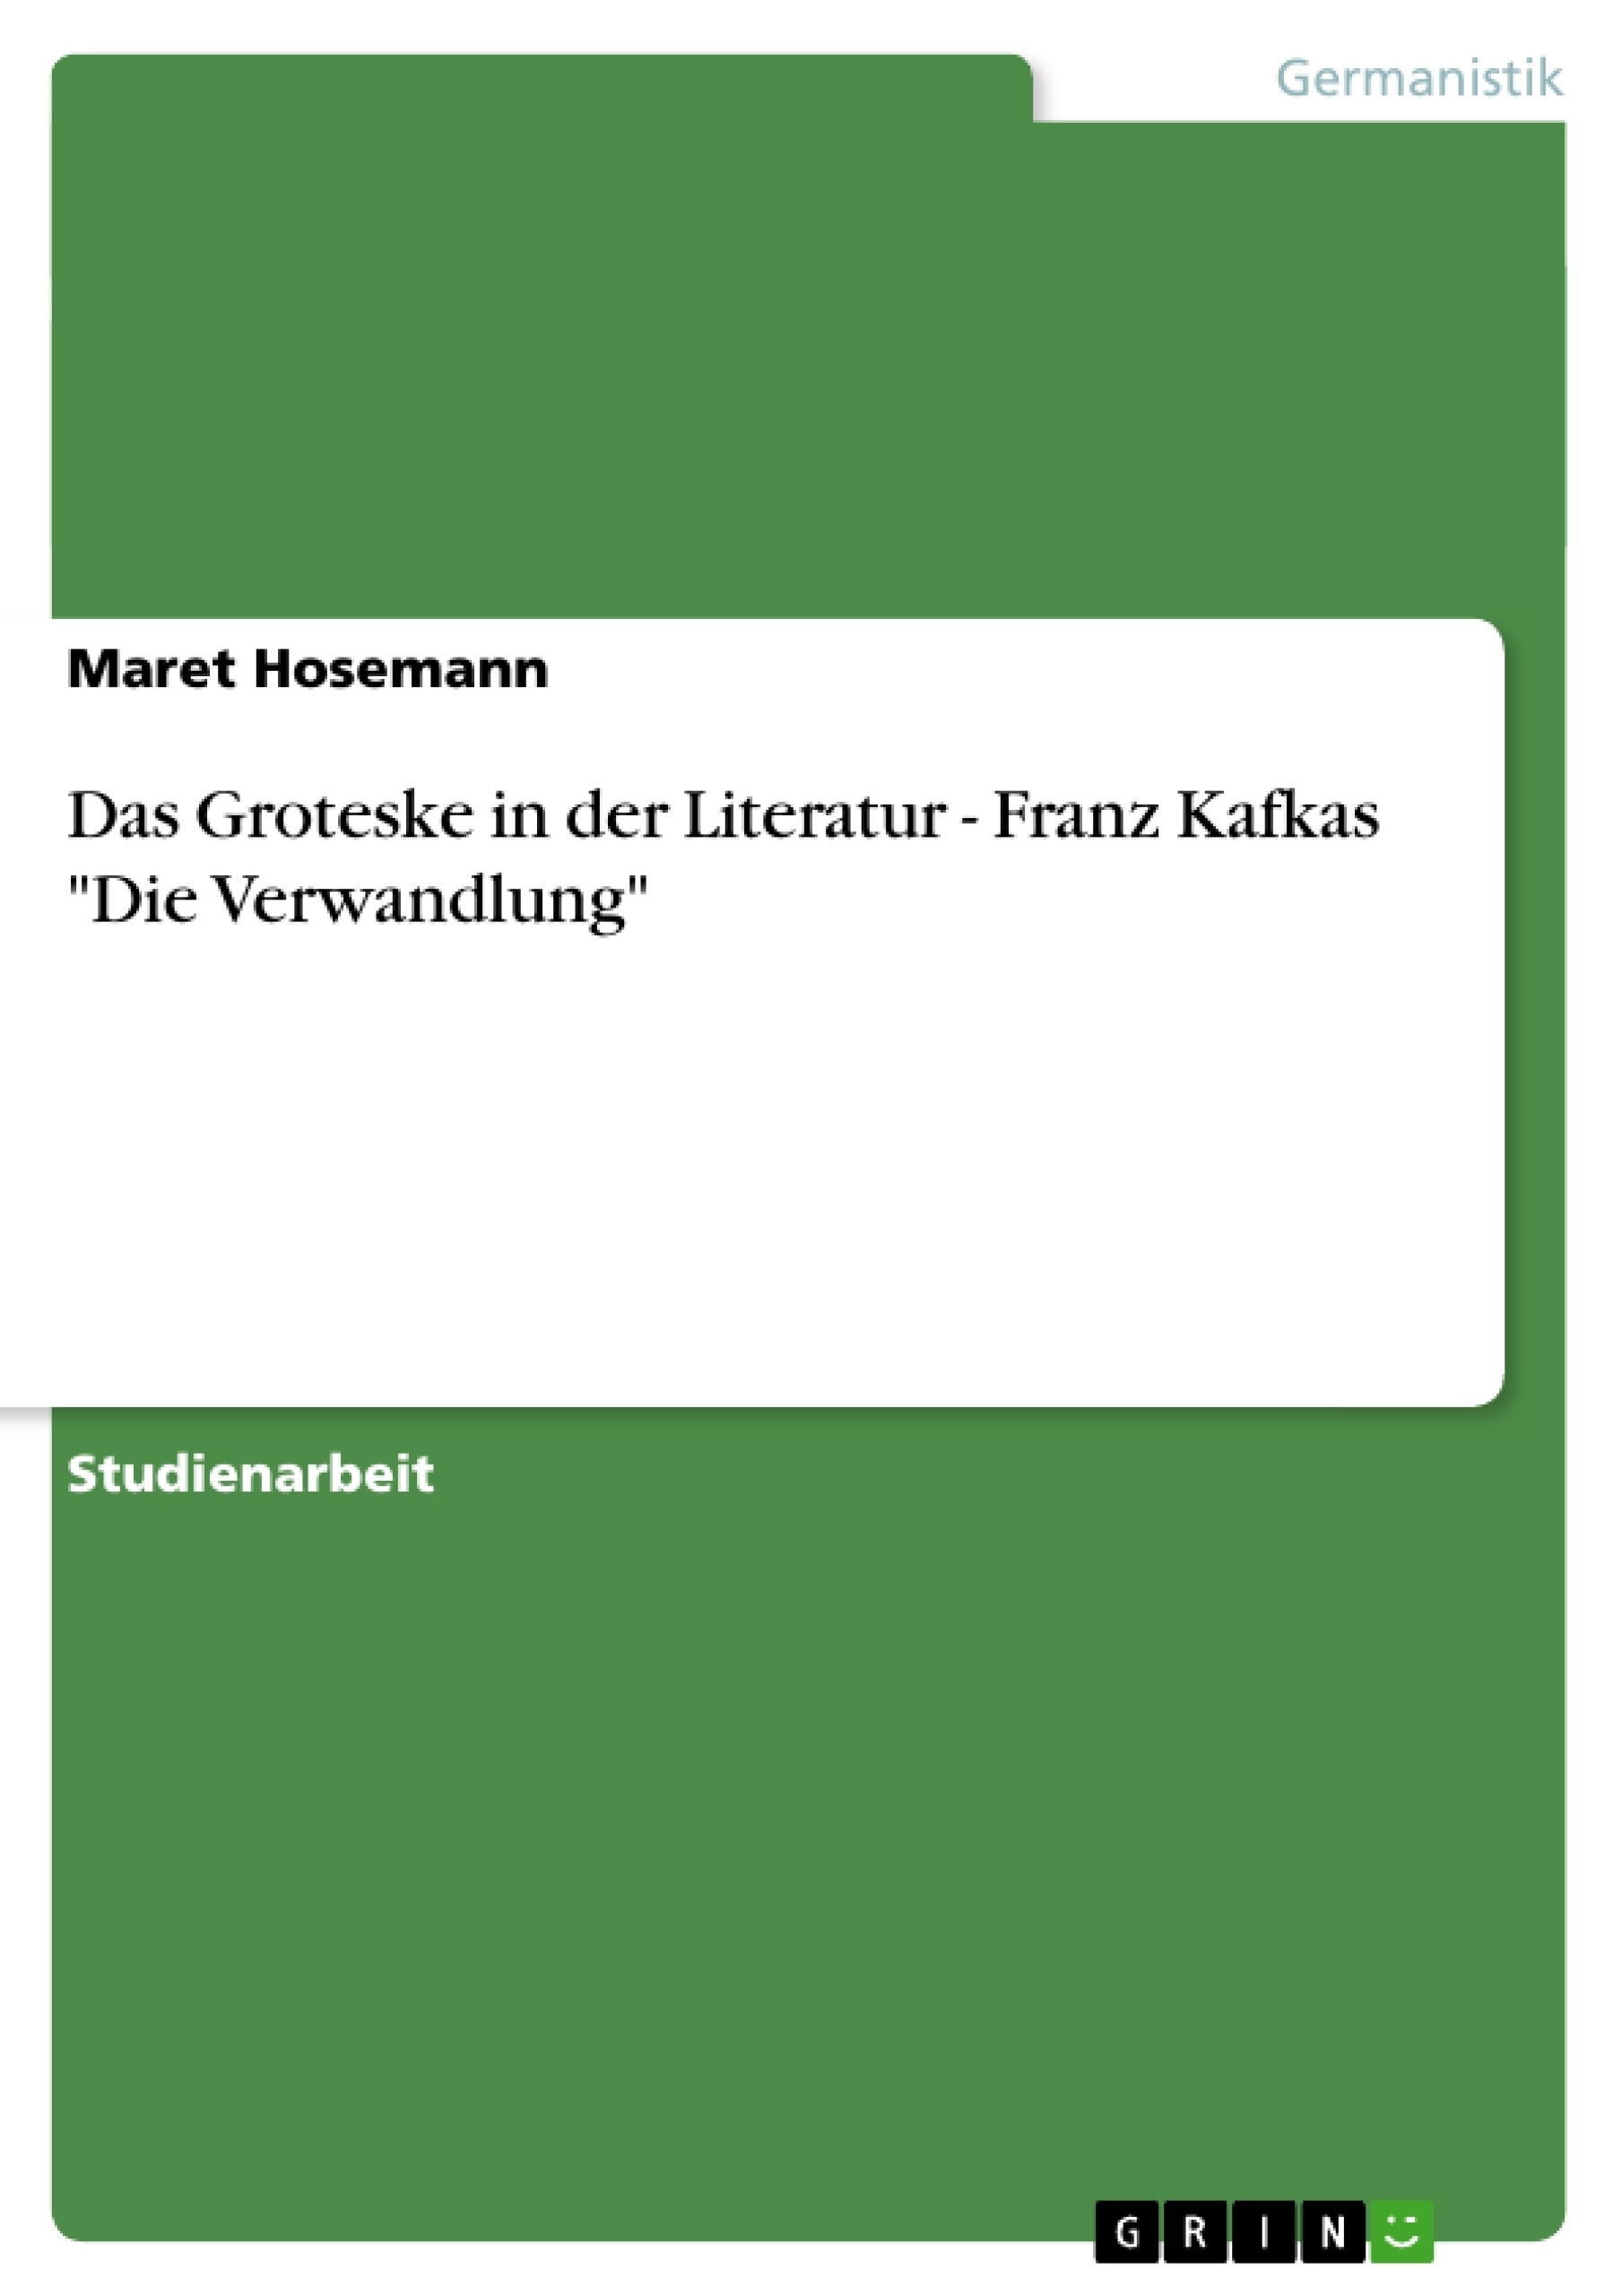 Título: Das Groteske in der Literatur - Franz Kafkas "Die Verwandlung"